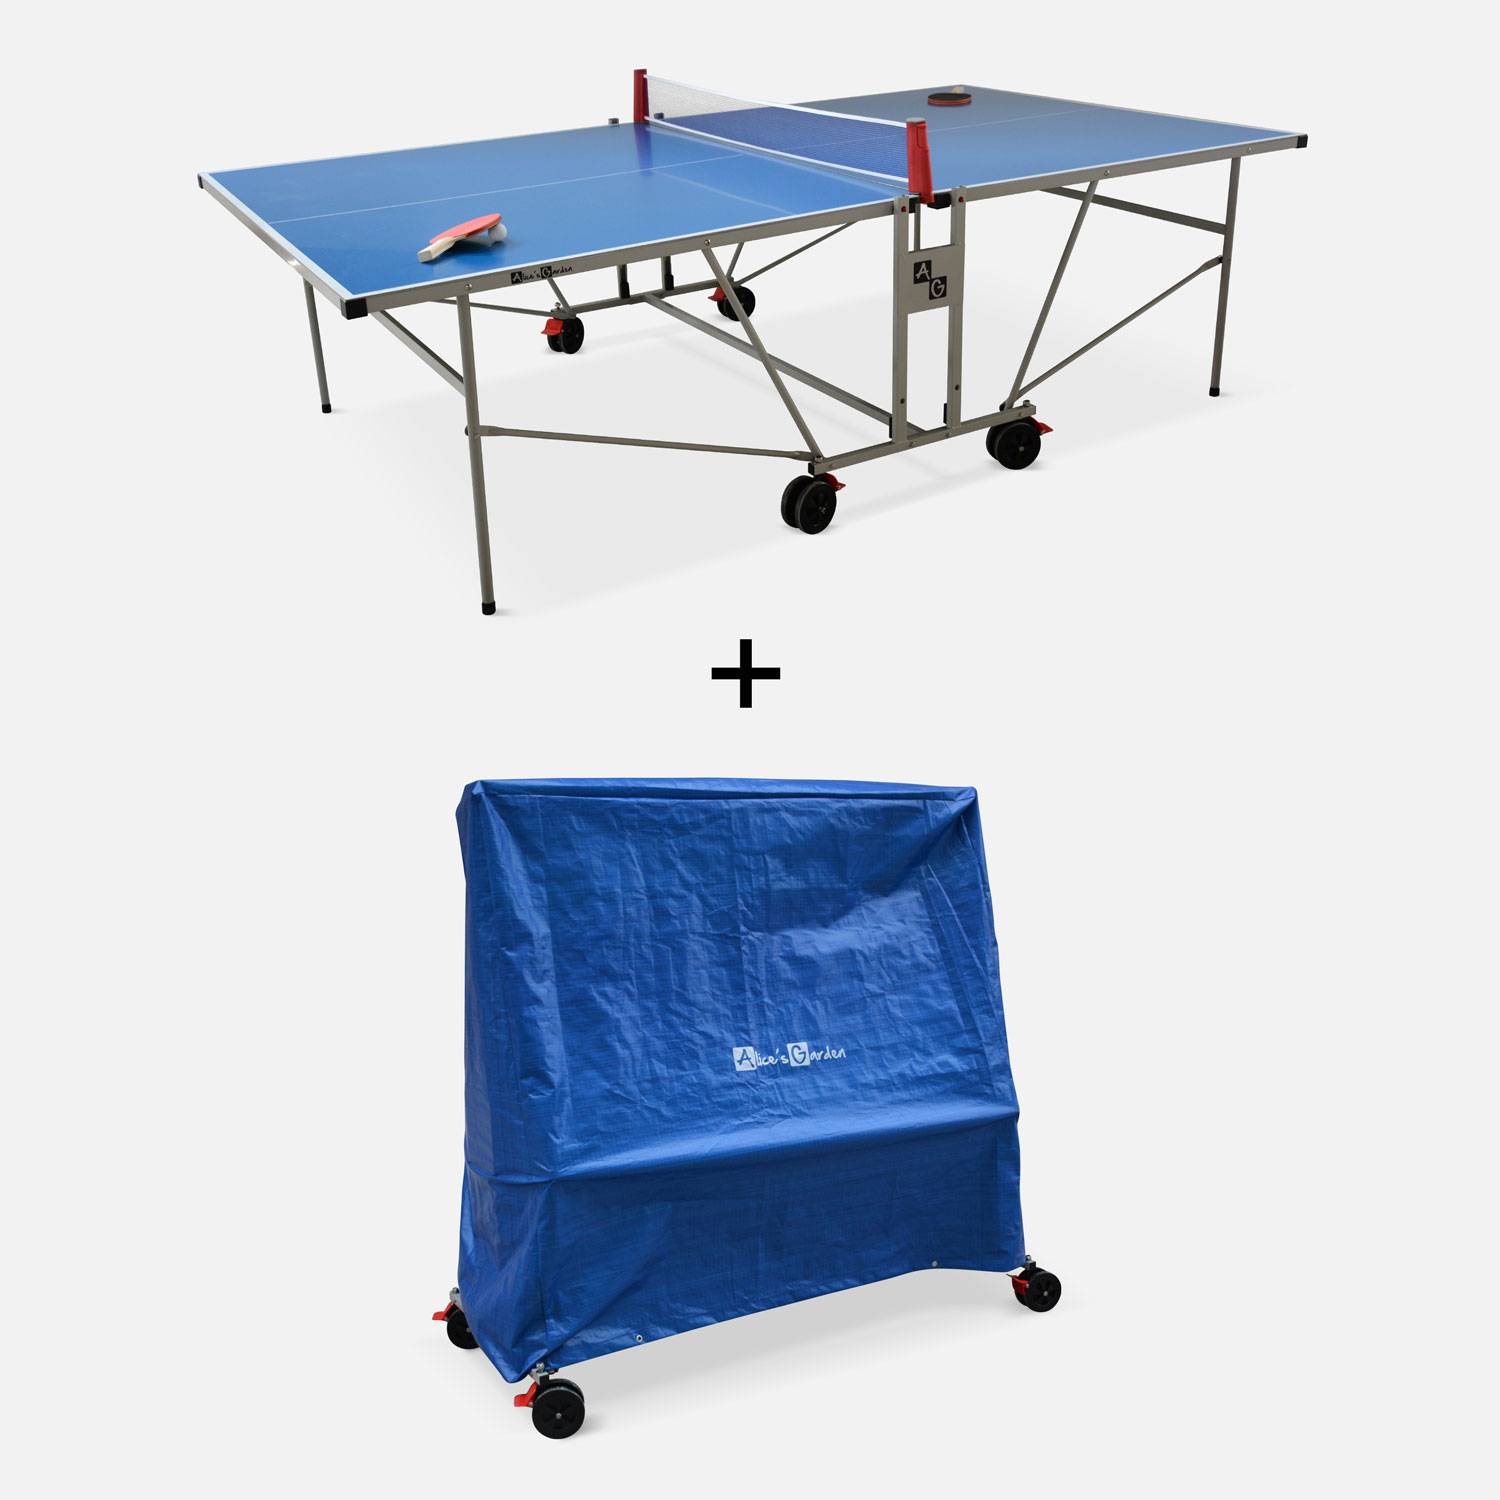 OUTDOOR tafeltennistafel blauw met beschermhoes, opvouwbare tafel met 2 batjes et 3 balletjes, voor buitengebruik, sport tafeltennis Photo1